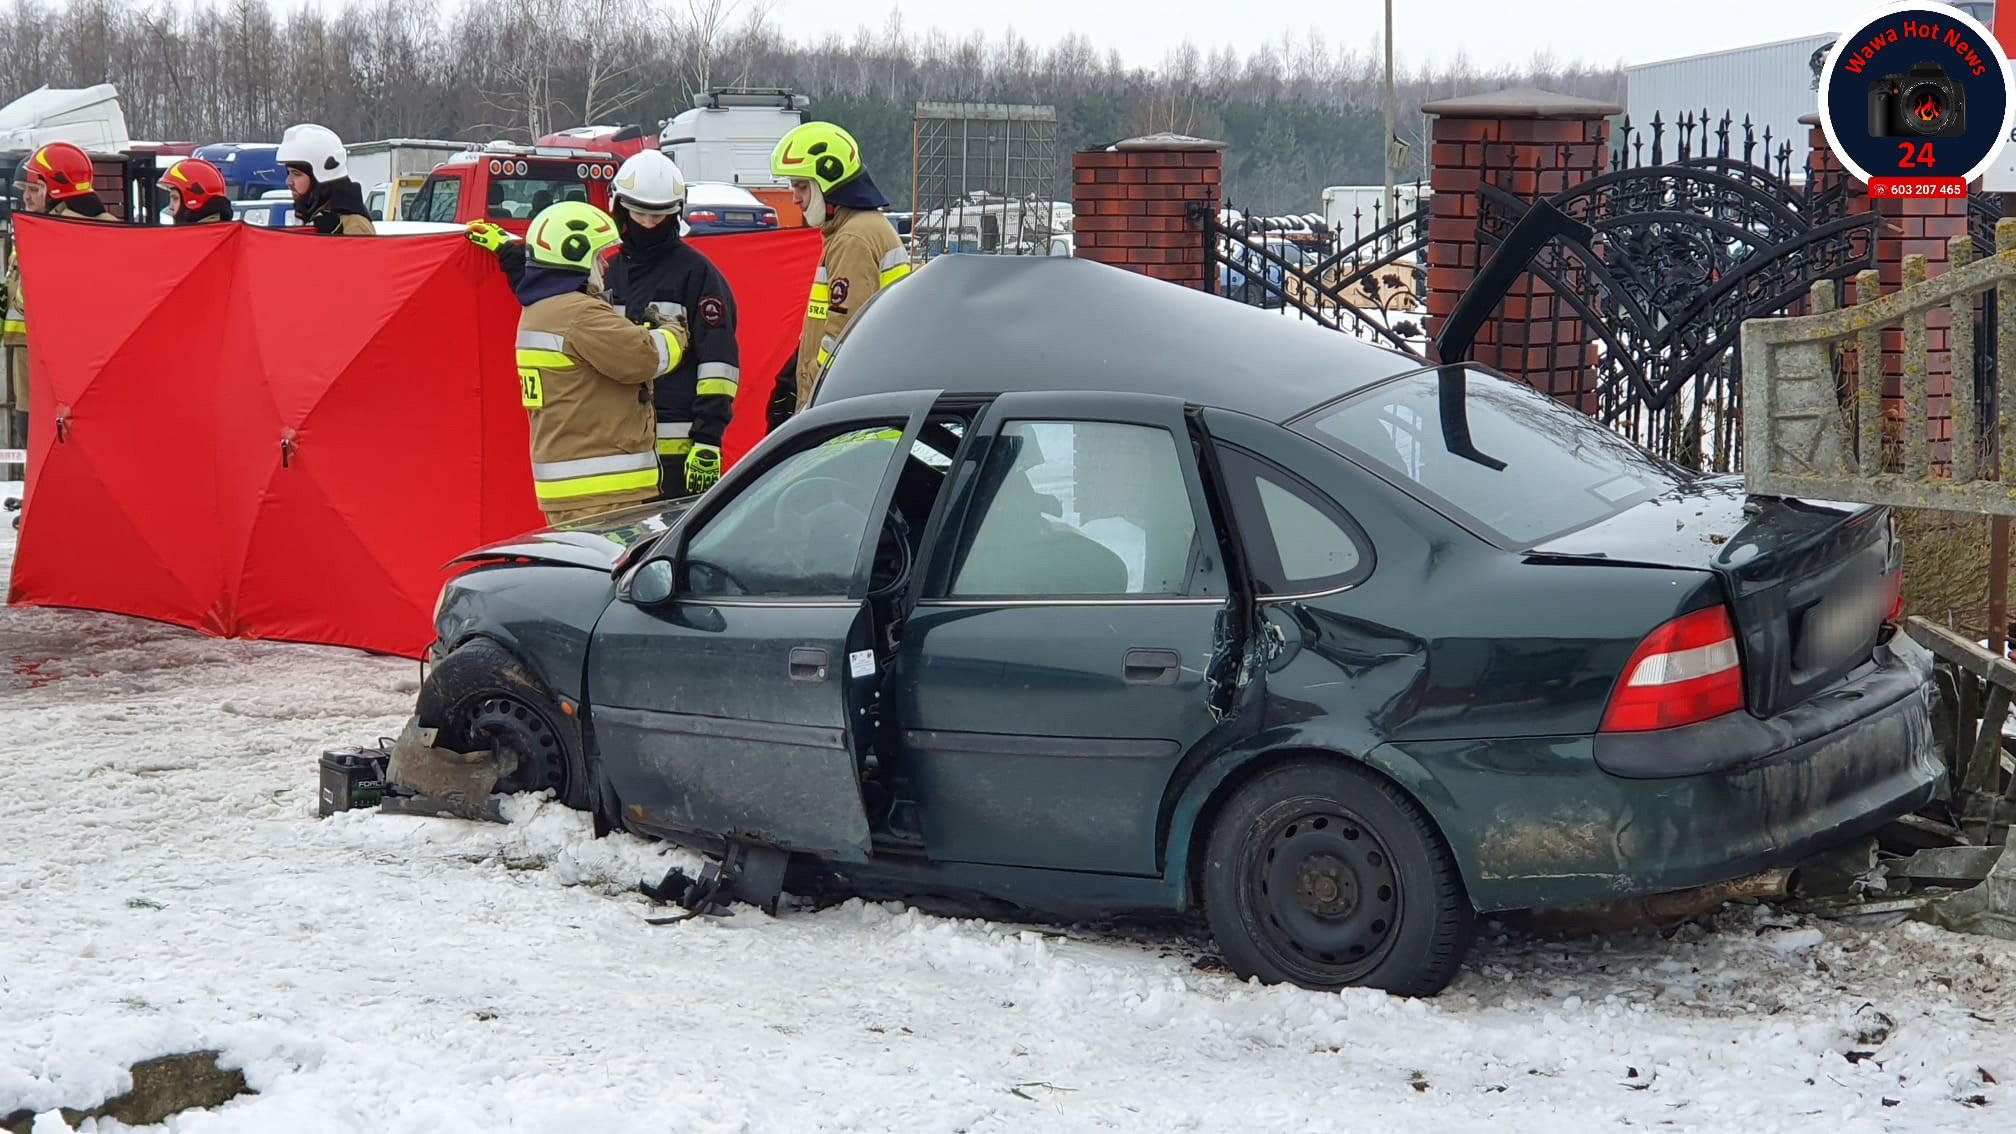 tragiczny wypadek koło płońska. auto uderzyło w ogrodzenie posesji. nie żyje jedna osoba